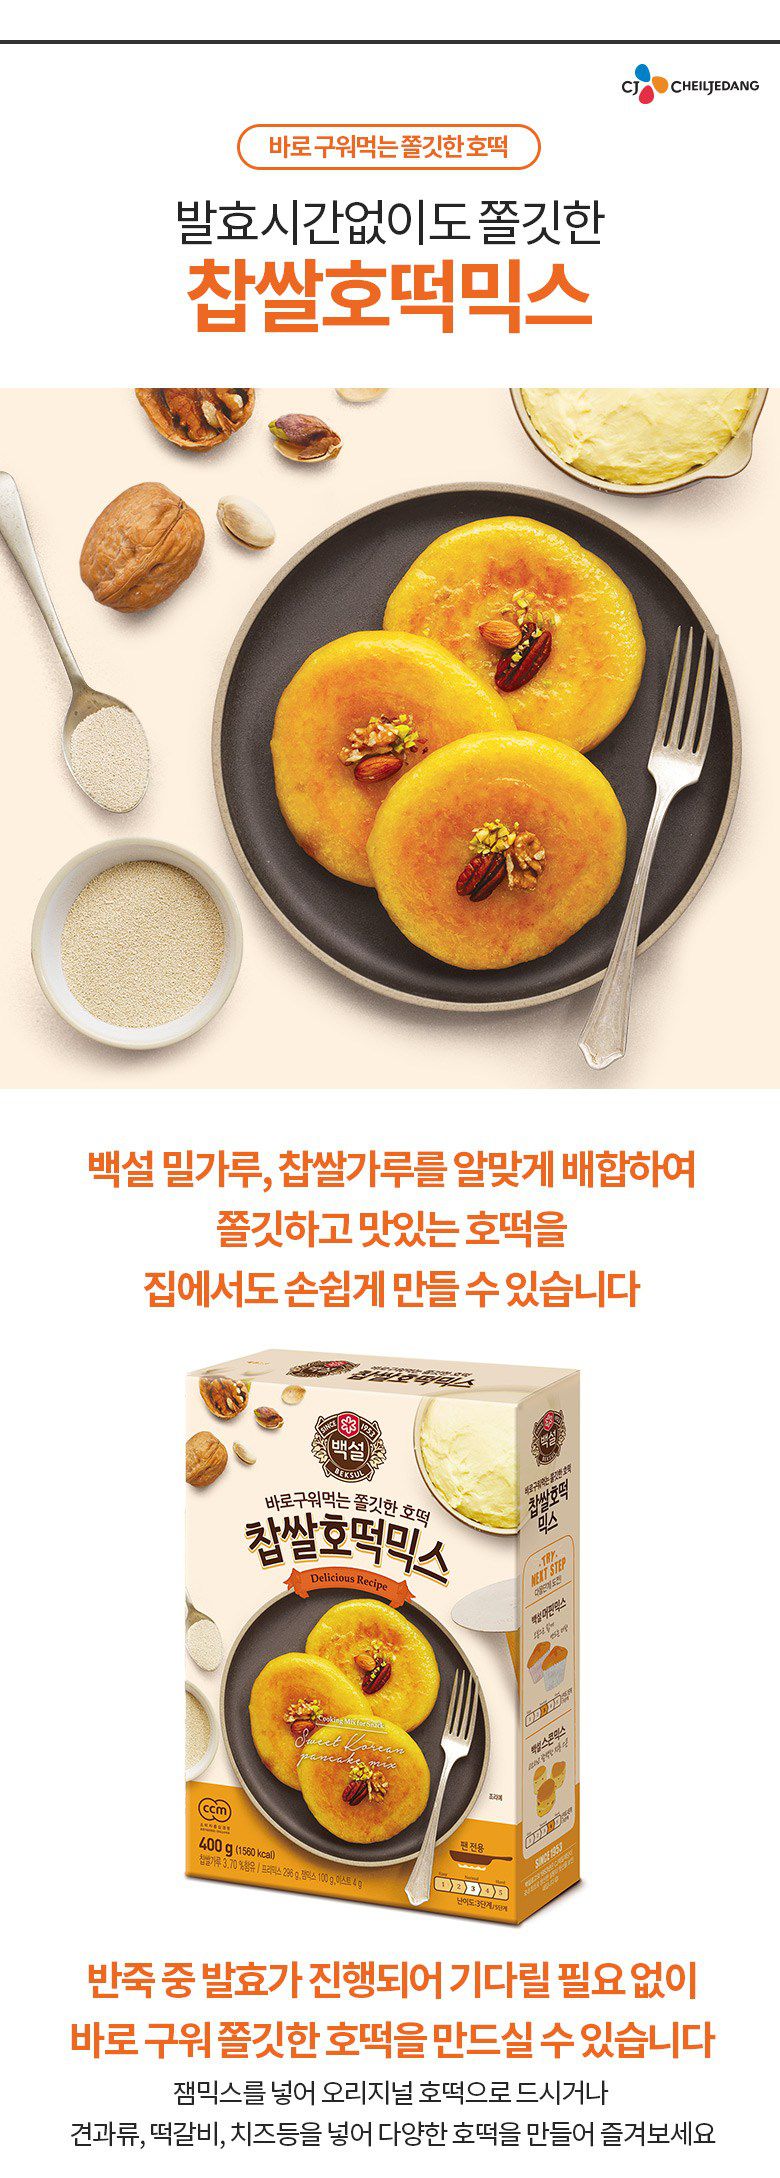 韓國食品-[CJ] 백설 찹쌀호떡믹스 400g